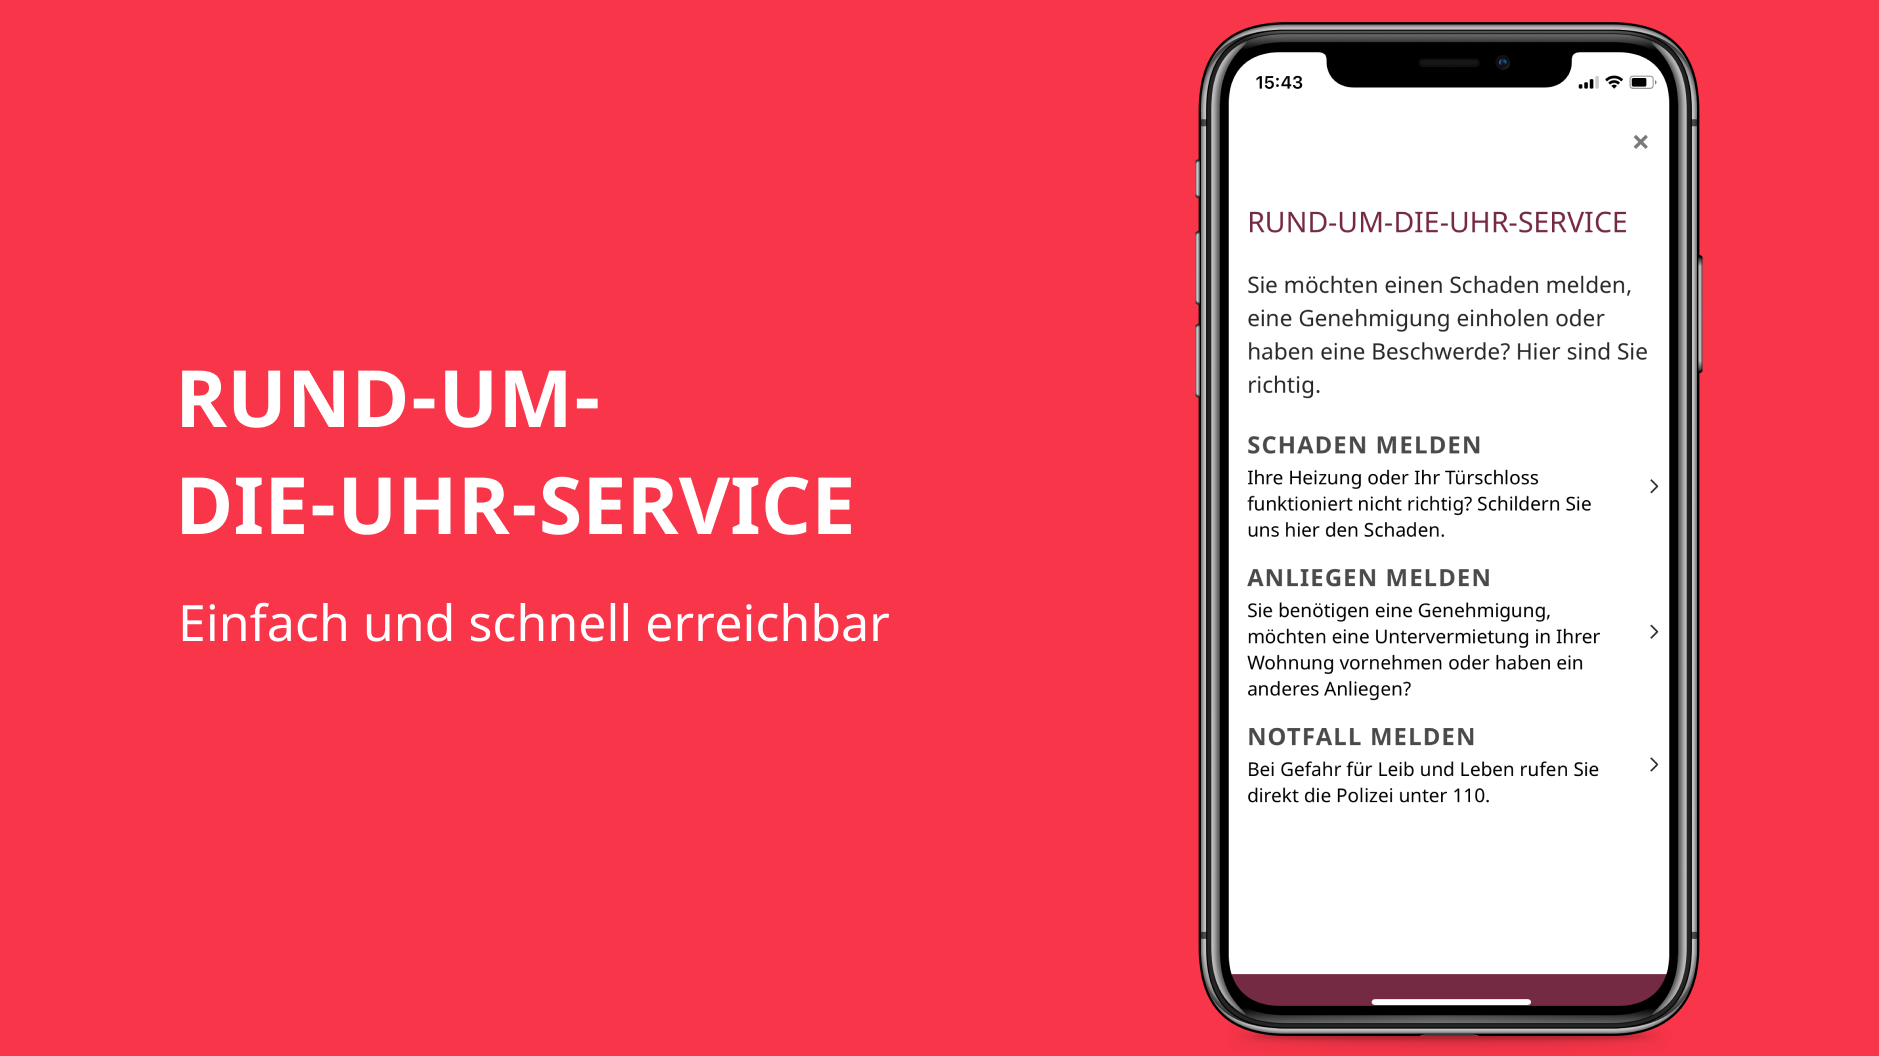 Grafik zeigt das Kapitel "Rund-um-die-Uhr-Service" in der GESOBAU Berlin App.